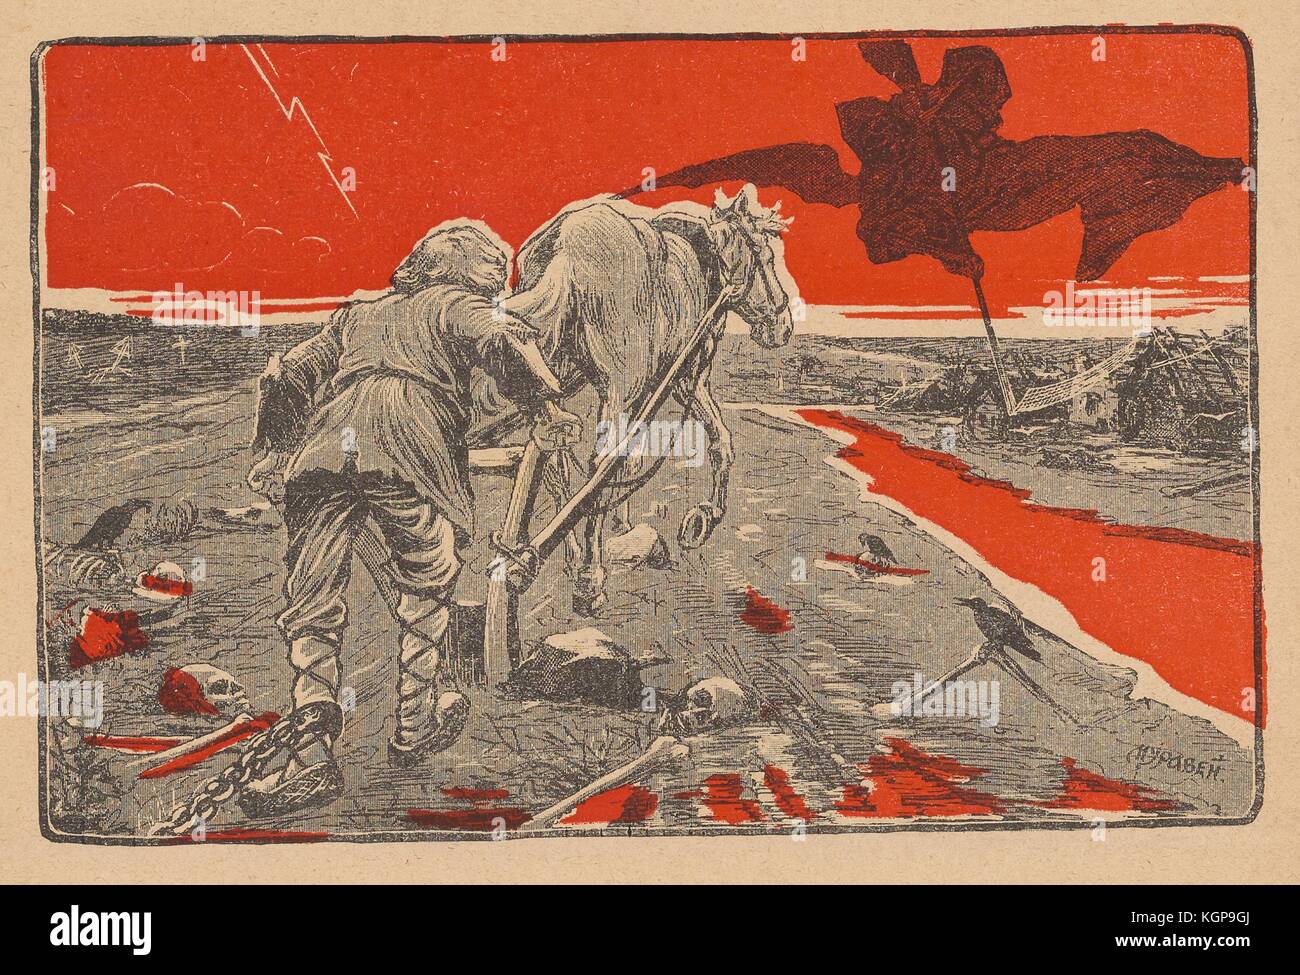 Illustration aus der russischen Satirezeitschrift Miting (Rally), die einen Mann mit einer Fesseln um den linken Knöchel zeigt, der ein Feld pflügt, das mehrere Schädel und Knochen verstreut hat, wobei Raben auf einigen Knochen sitzen; der Himmel und Teile des Bodens sind rot gefärbt, 1906. () Stockfoto